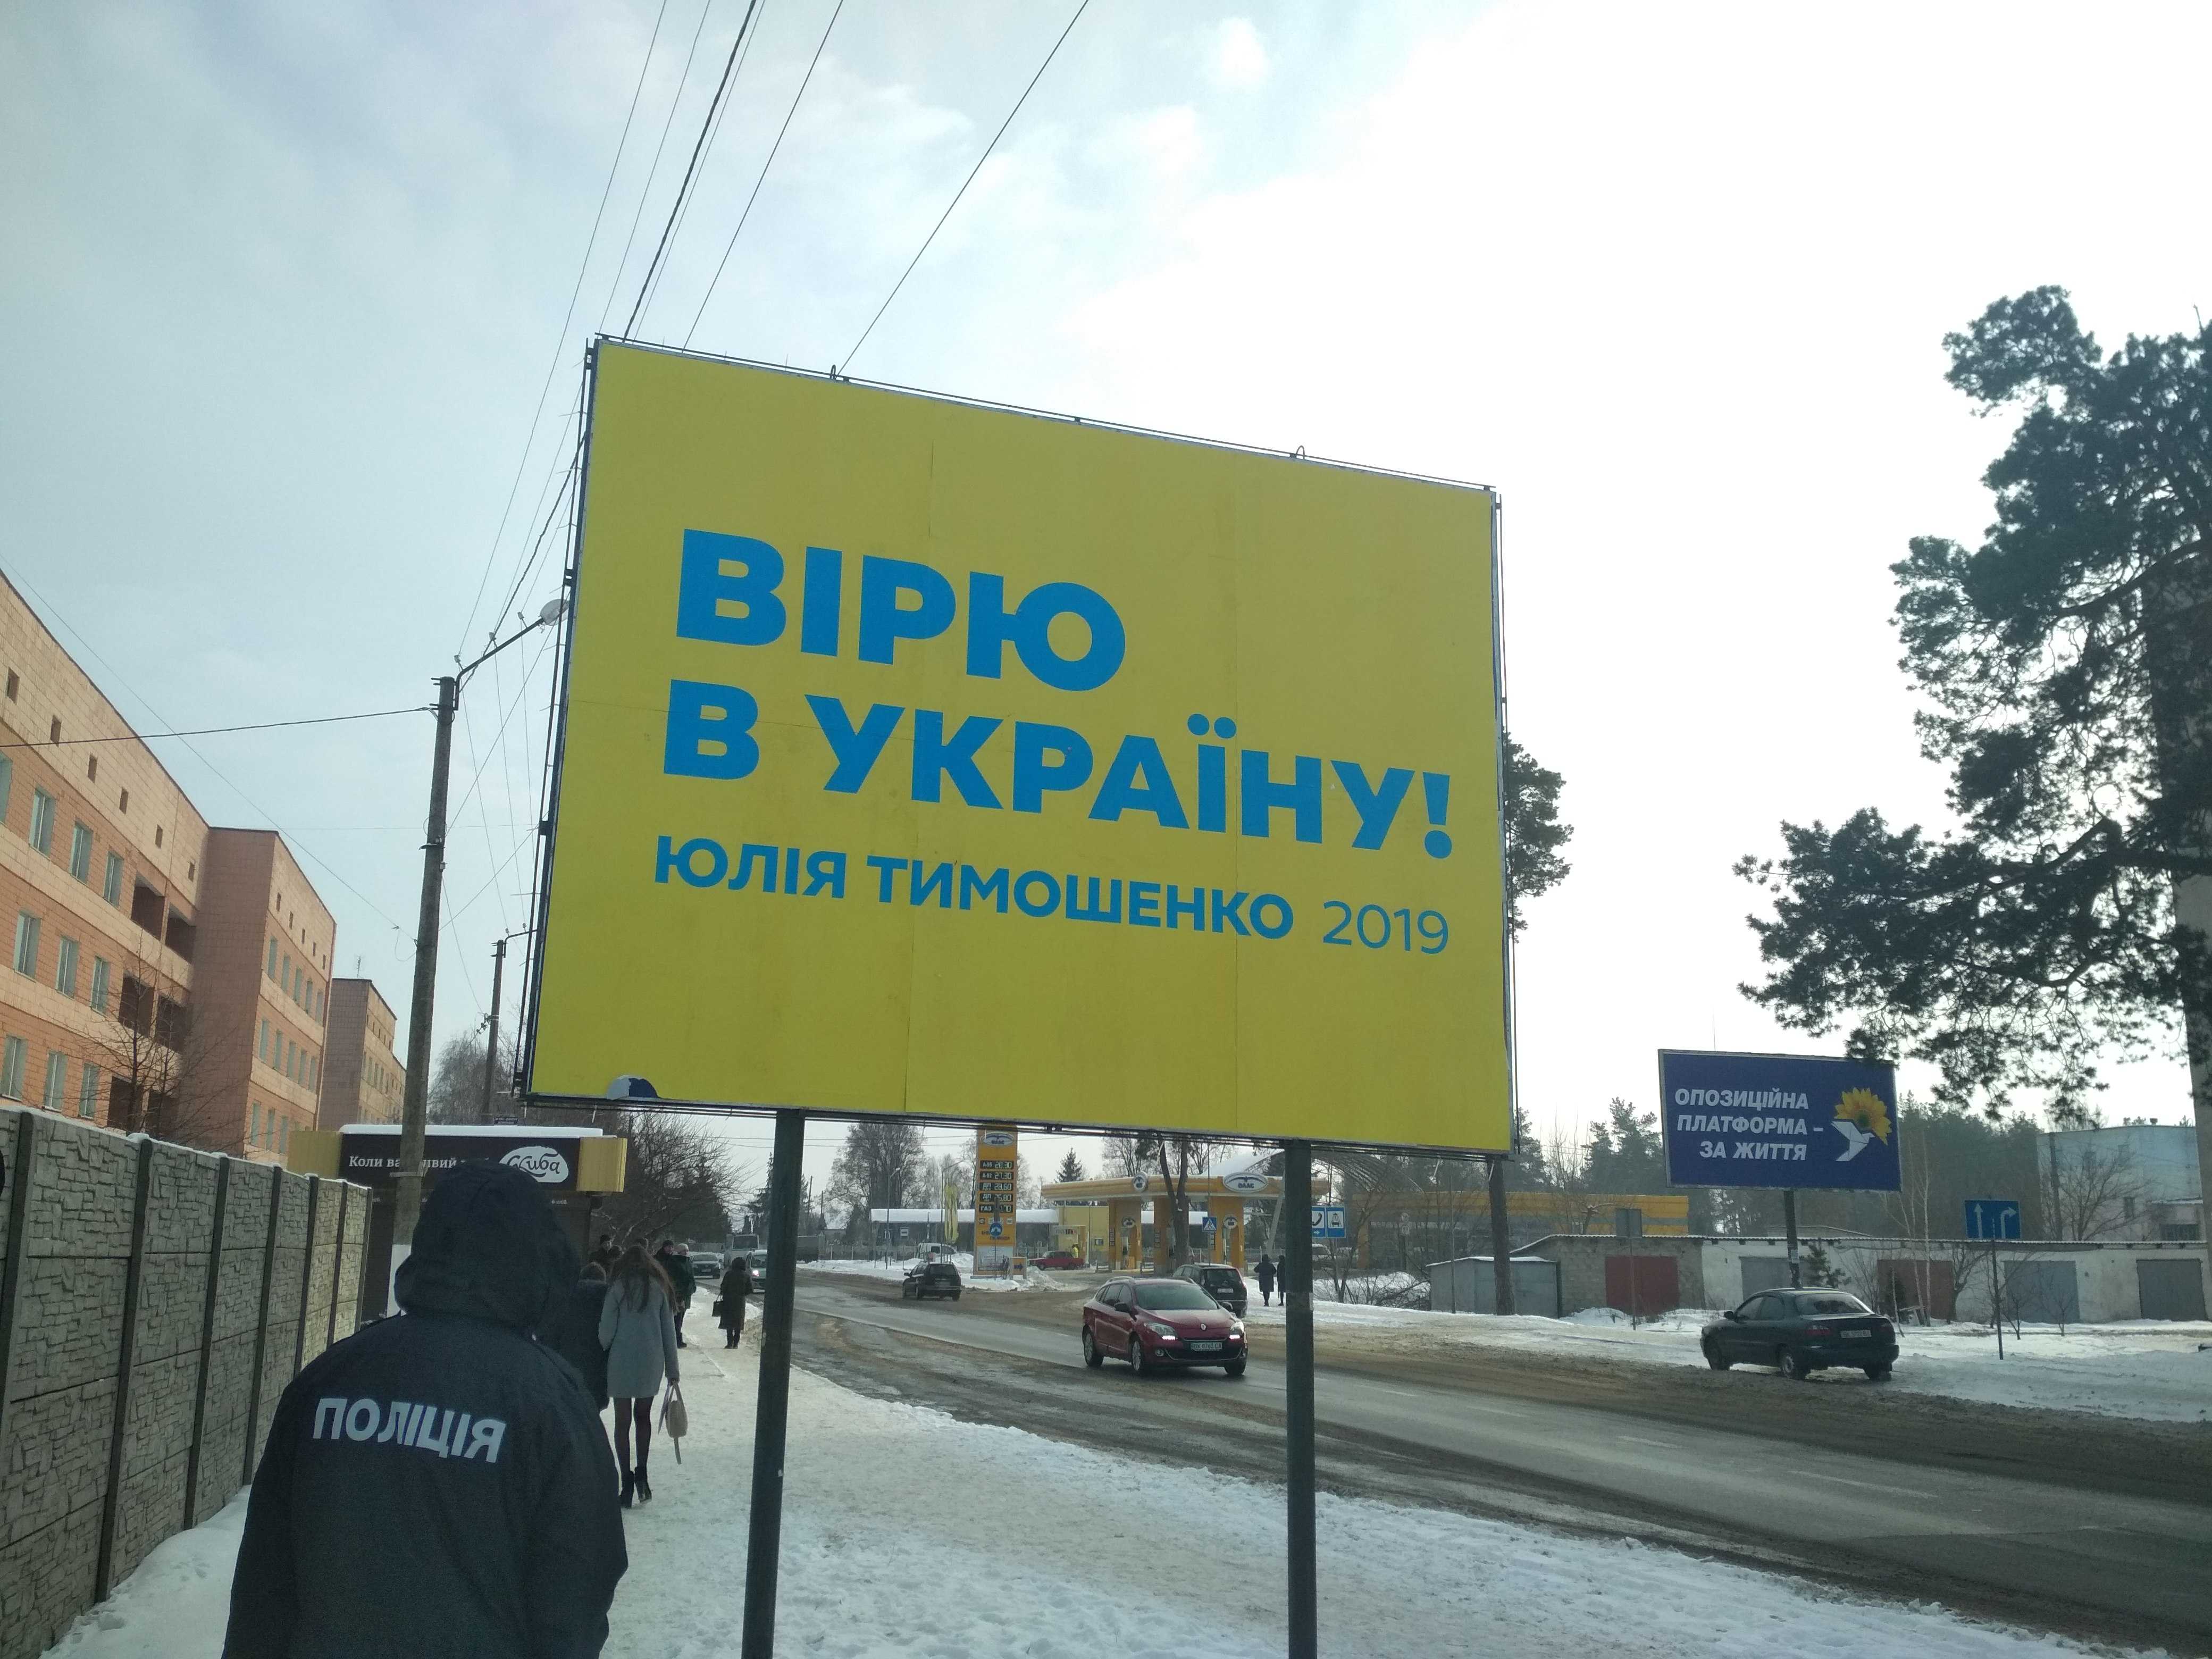 news 28.01.2019 Rivnenshchyna agitaciia 7